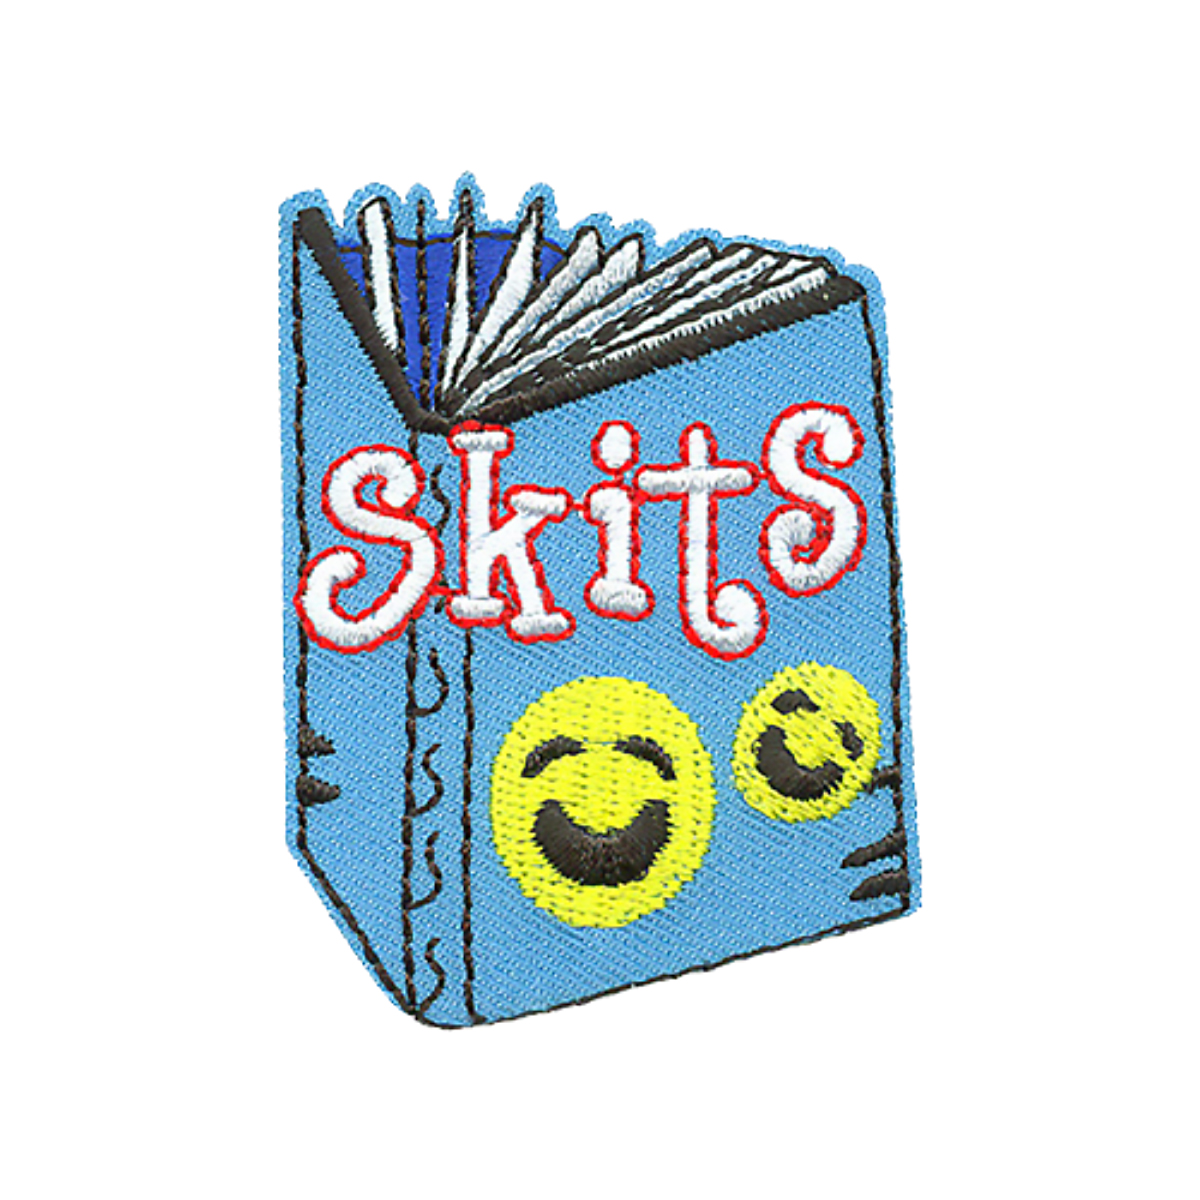 Skits - W